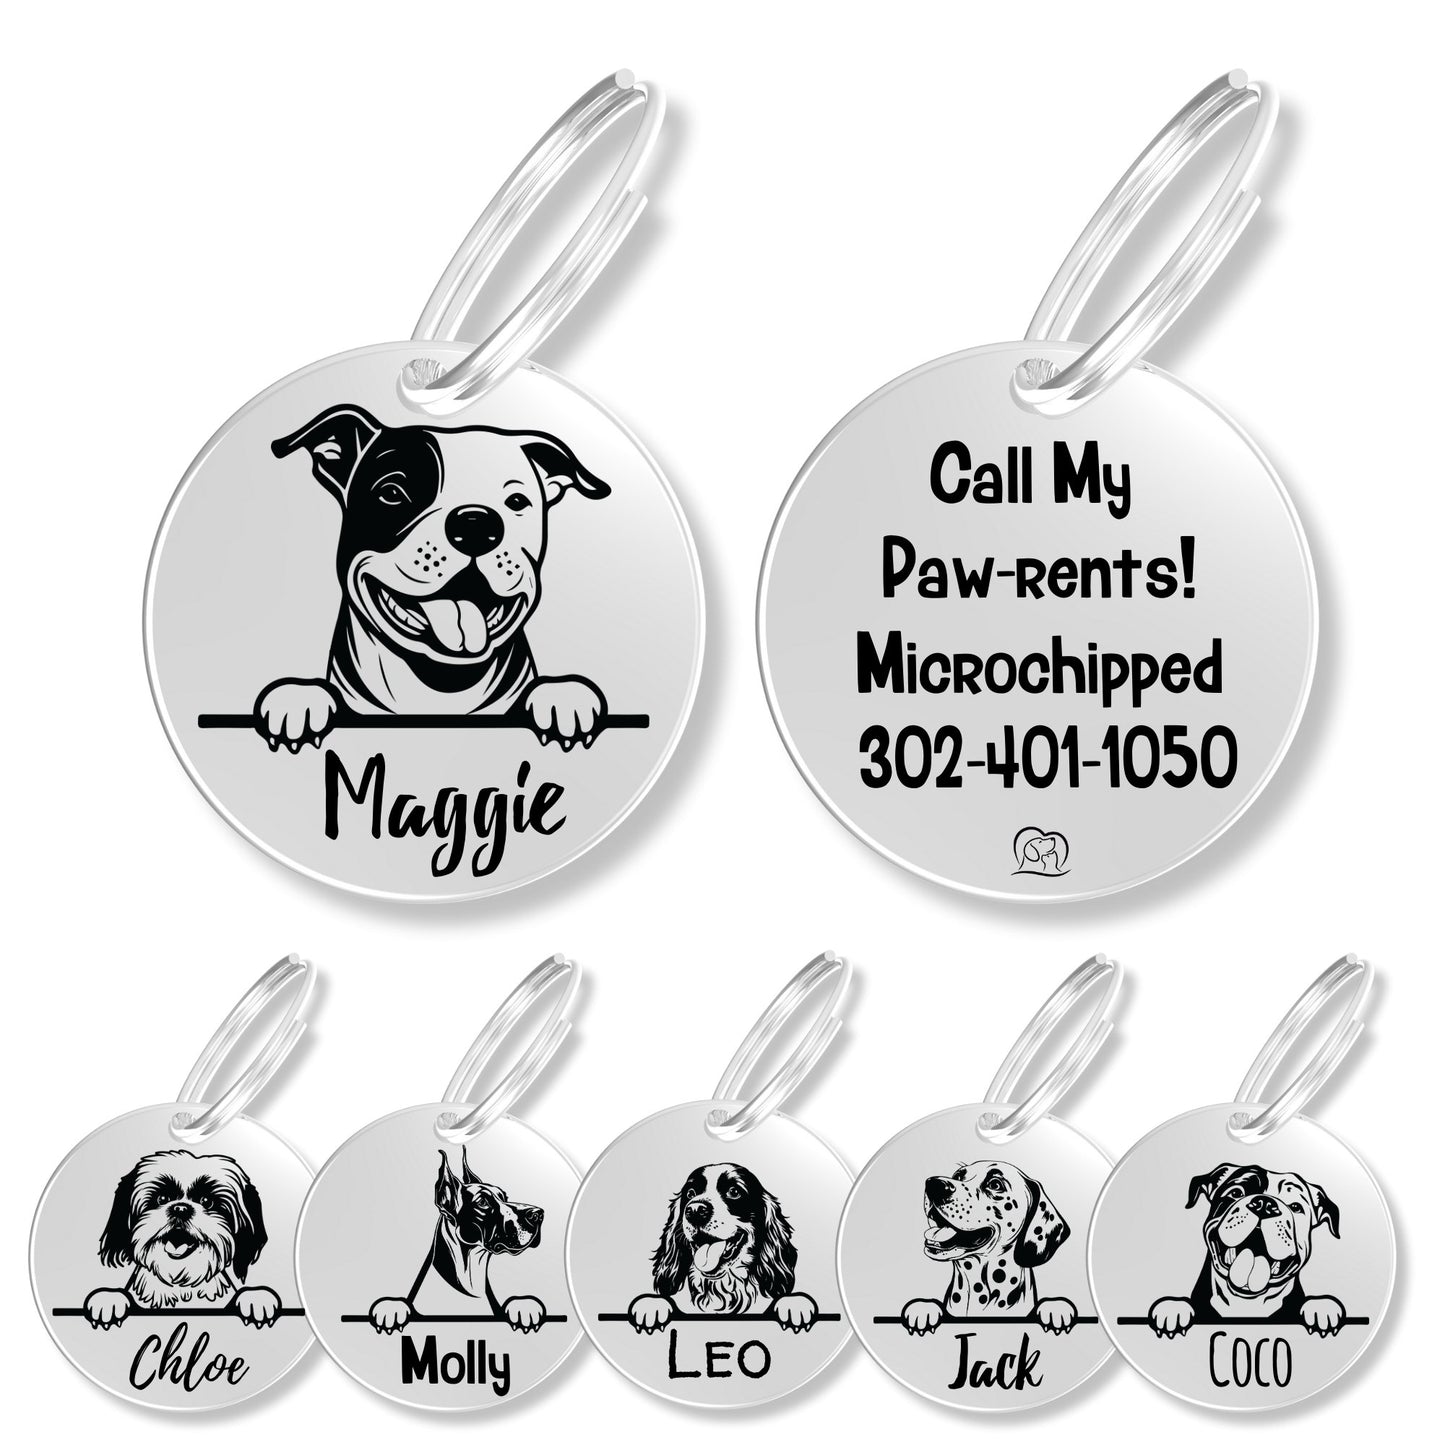 Breed Dog Tag - Personalized Breed Dog Tag (Staffordshire Bu)